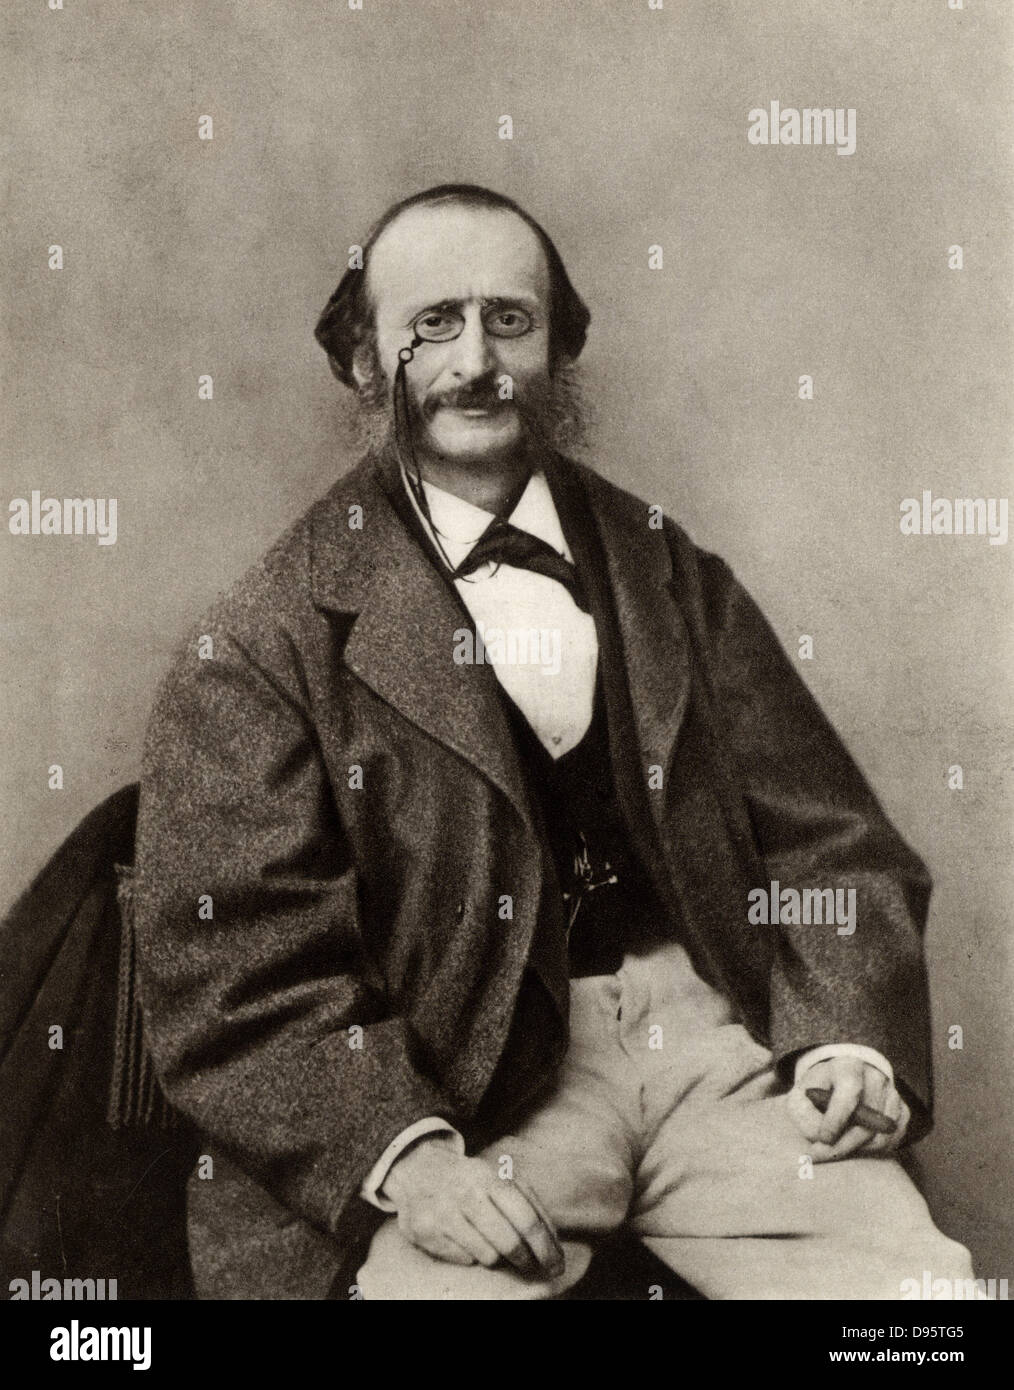 Jacques Offenbach (1819-1880) nato Jakob Levy Eberst Offenbach a Colonia. Tedesco-francese nato opera-comique compositore e conduttore. Da una fotografia di Nadar, pseudonimo di Gaspard-Felix Tournachon (1820-1910). Foto Stock